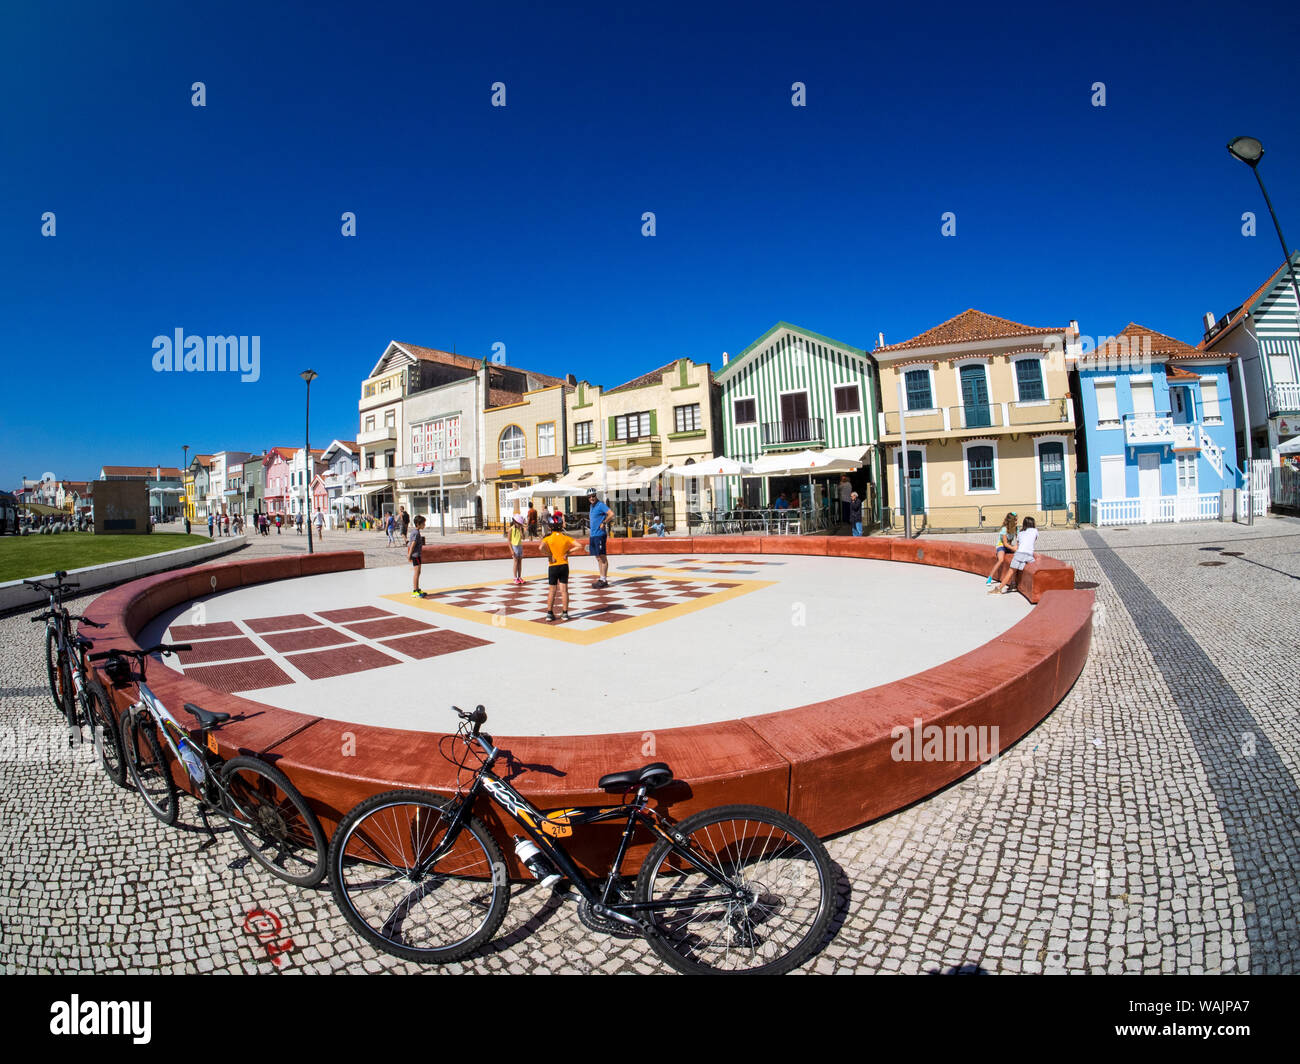 Portugal, Costa Nova. Aire de jeux le long de la rue de la ville Banque D'Images